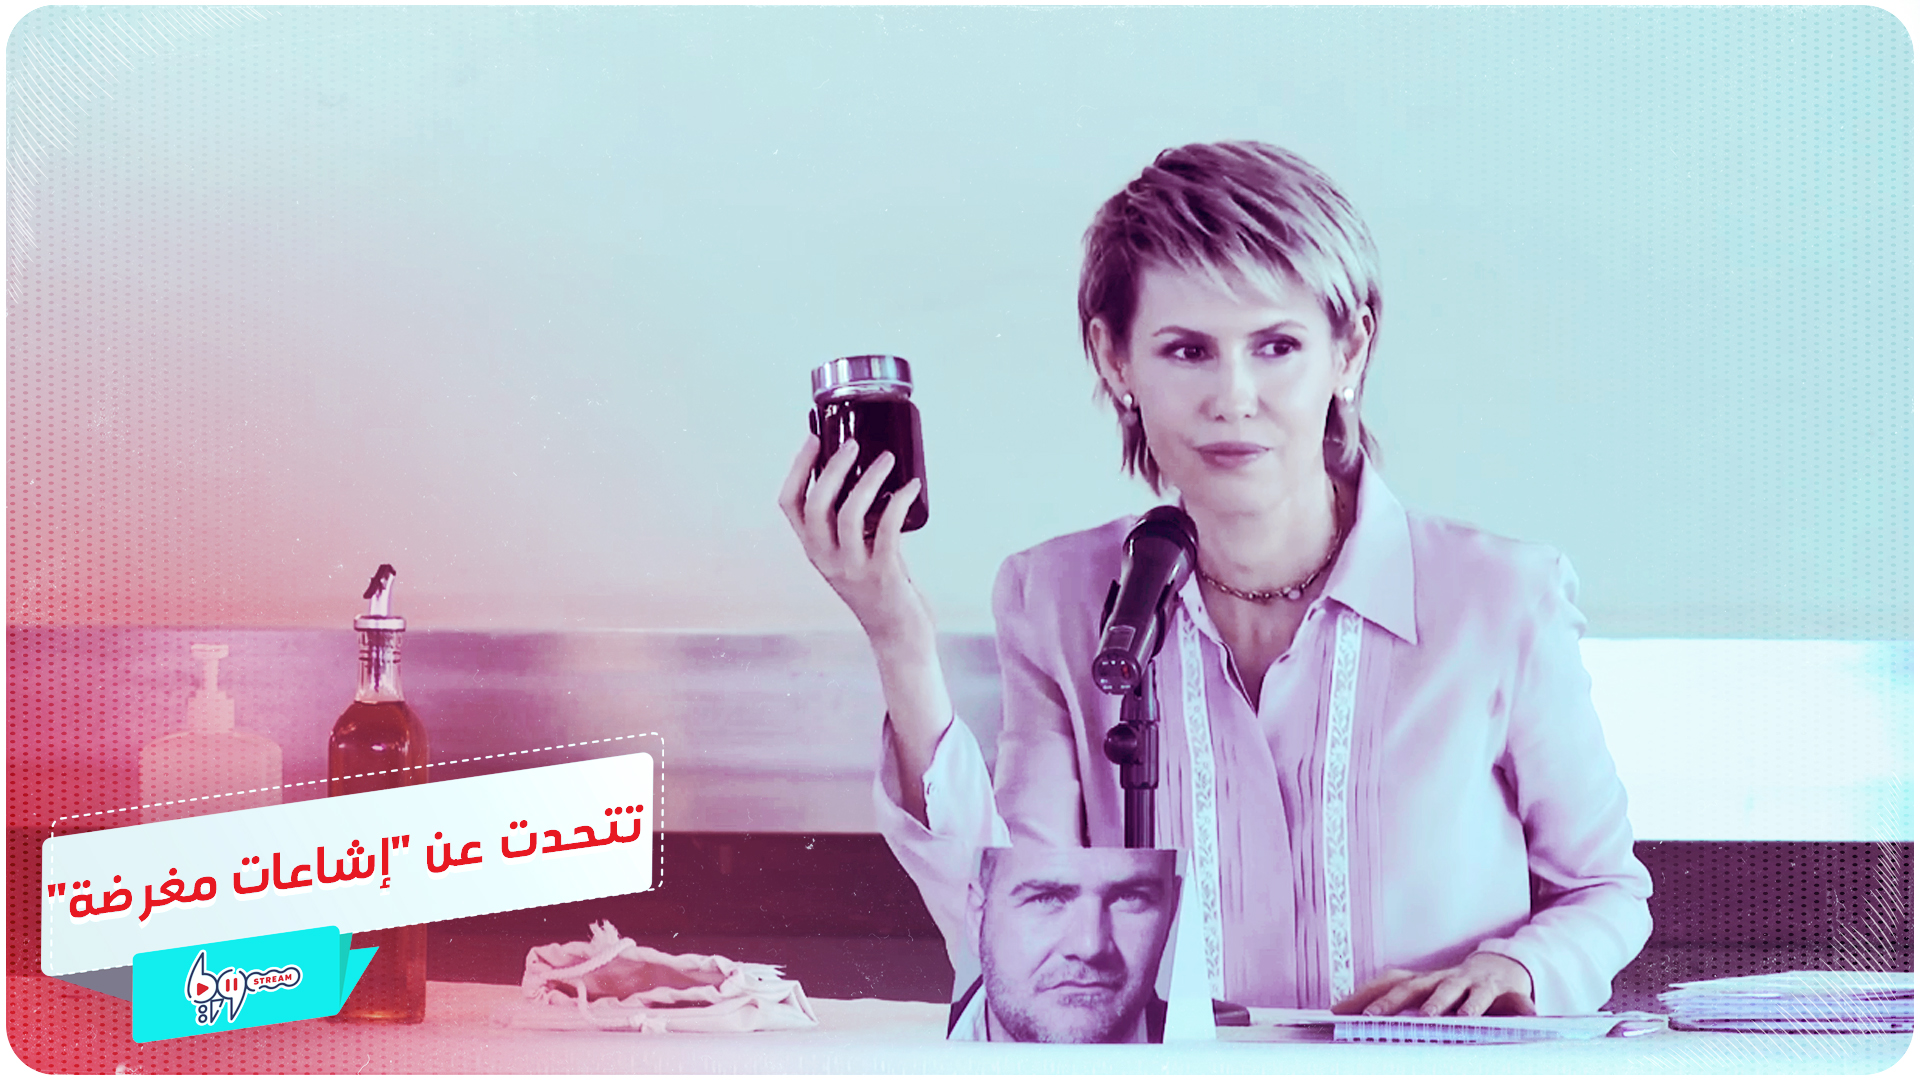 أسماء الأسد تتحدت عن "إشاعات مغرضة"